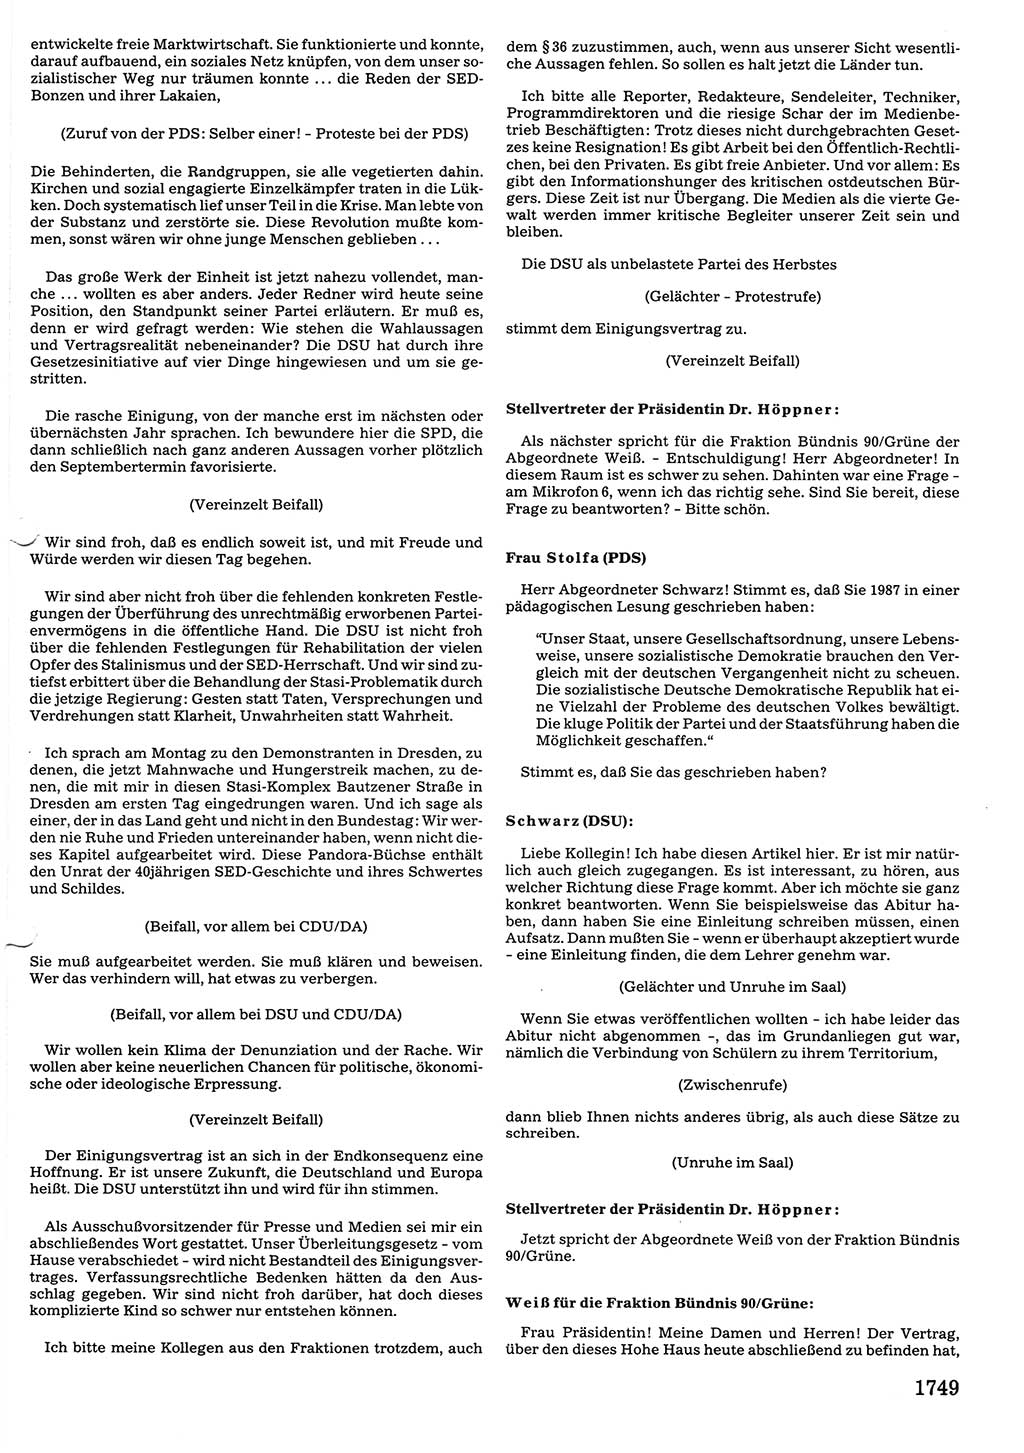 Tagungen der Volkskammer (VK) der Deutschen Demokratischen Republik (DDR), 10. Wahlperiode 1990, Seite 1749 (VK. DDR 10. WP. 1990, Prot. Tg. 1-38, 5.4.-2.10.1990, S. 1749)